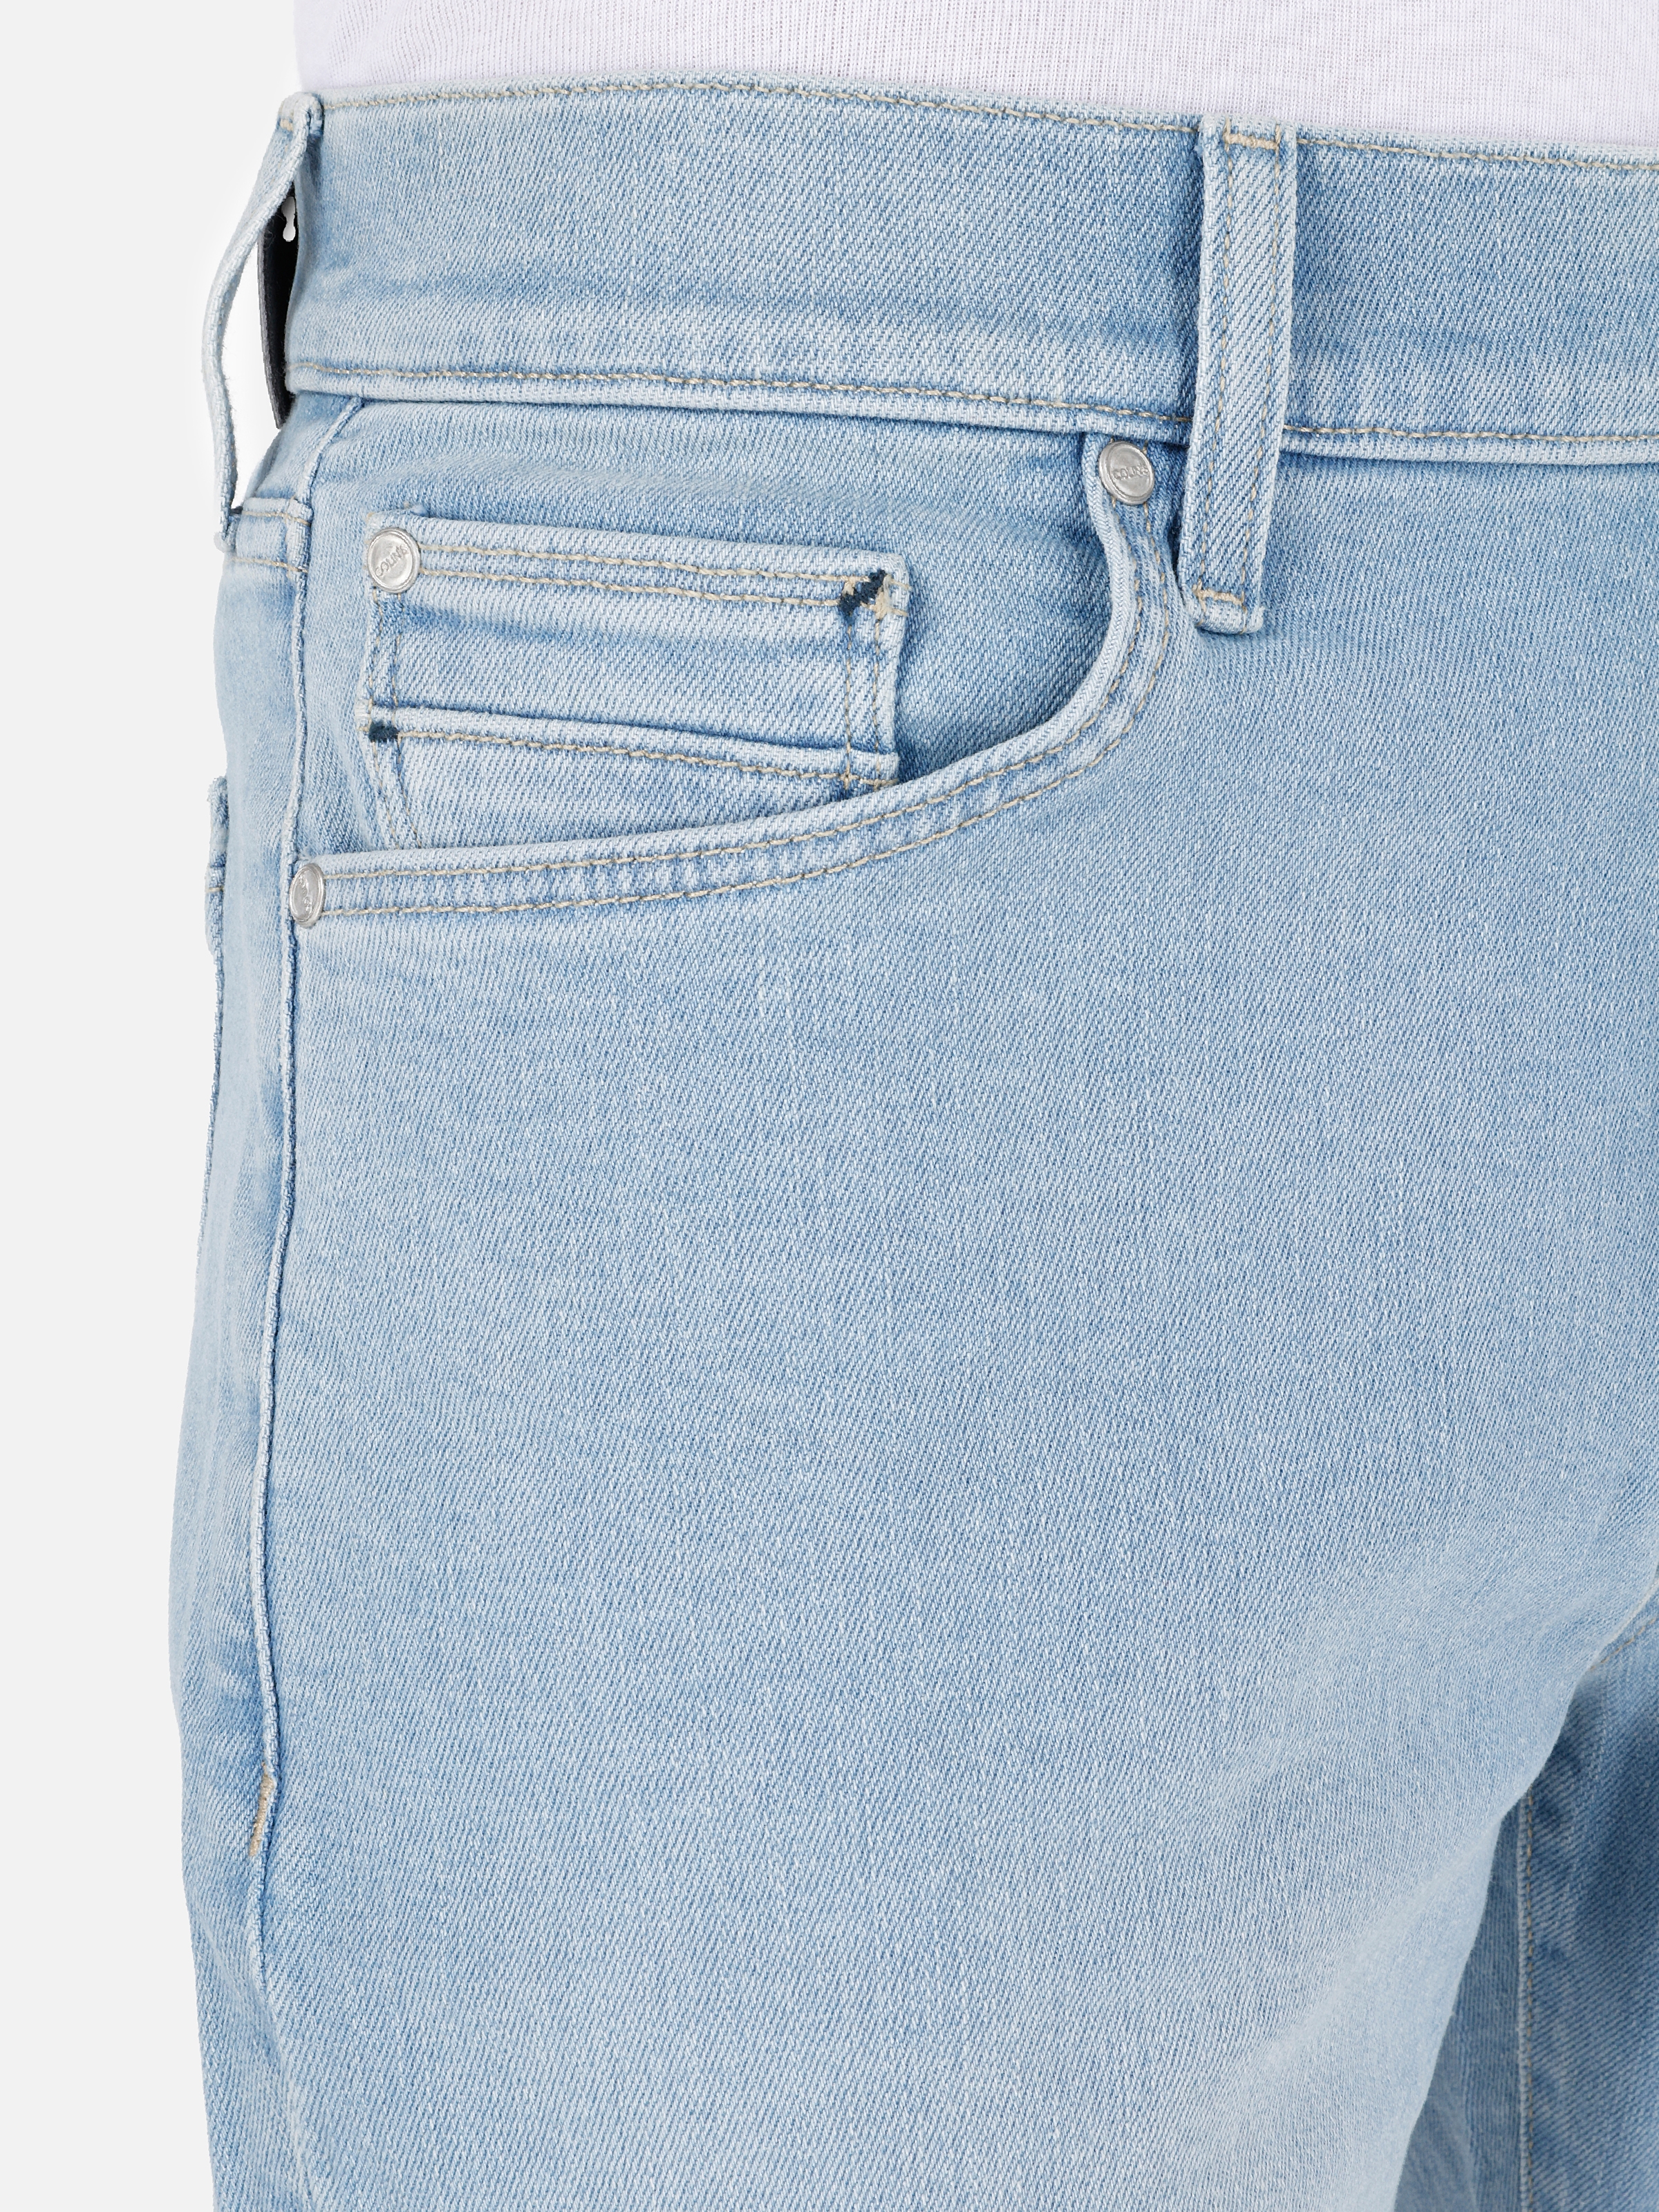 Afișați detalii pentru Short / Pantaloni Scurti De Barbati Albastru Slim Fit 041 DANNY 